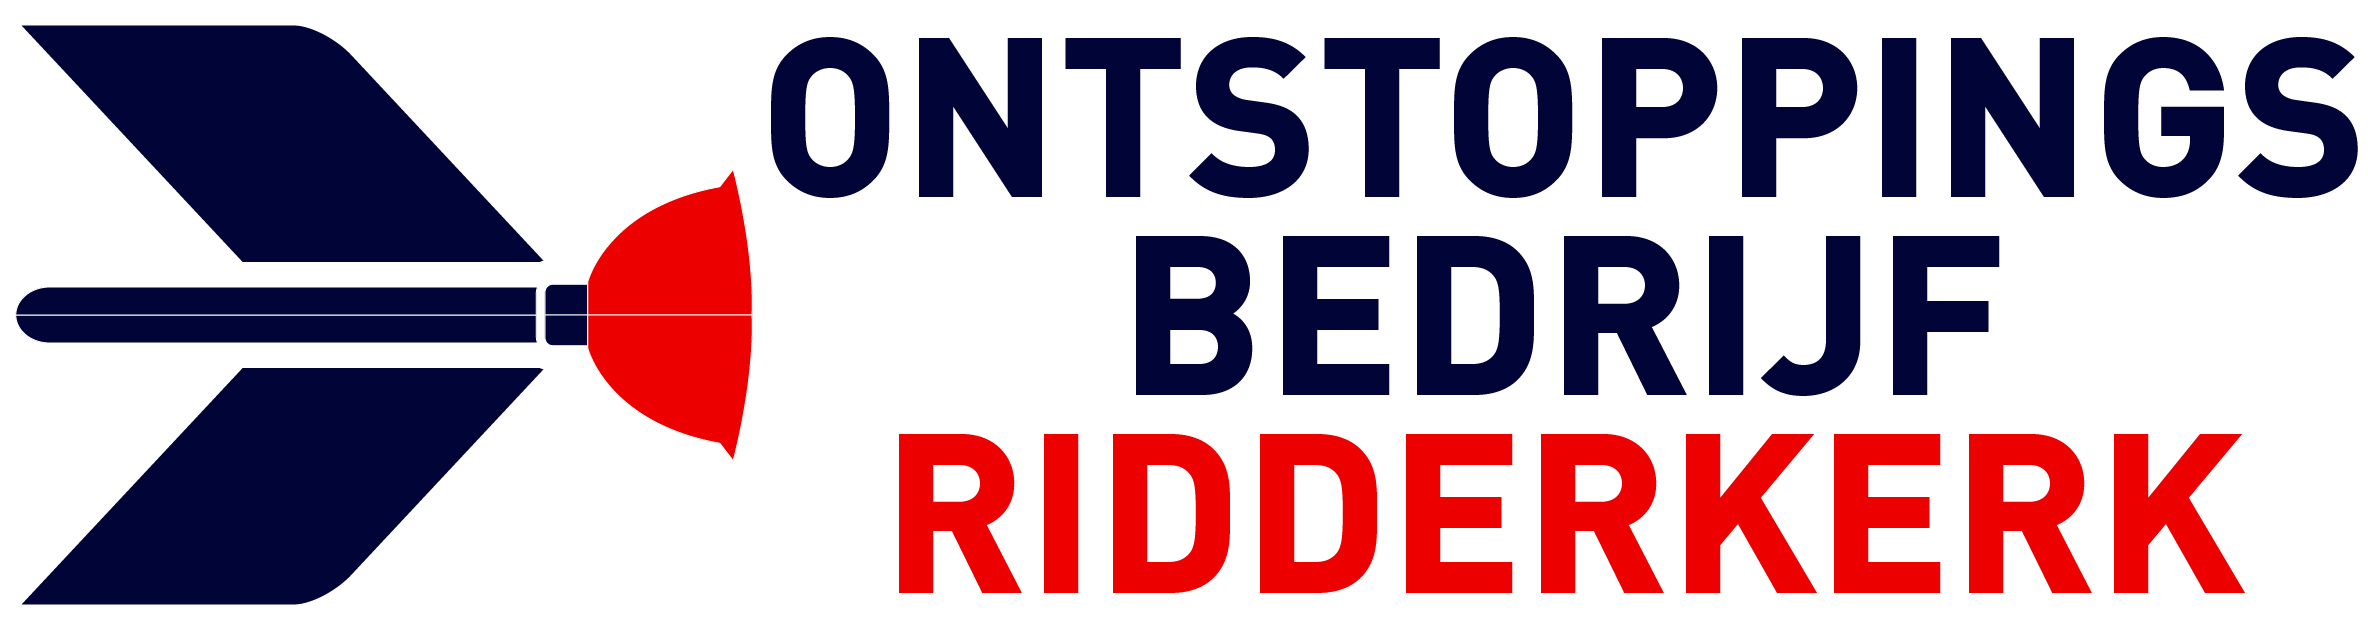 Ontstoppingsbedrijf Ridderkerk logo